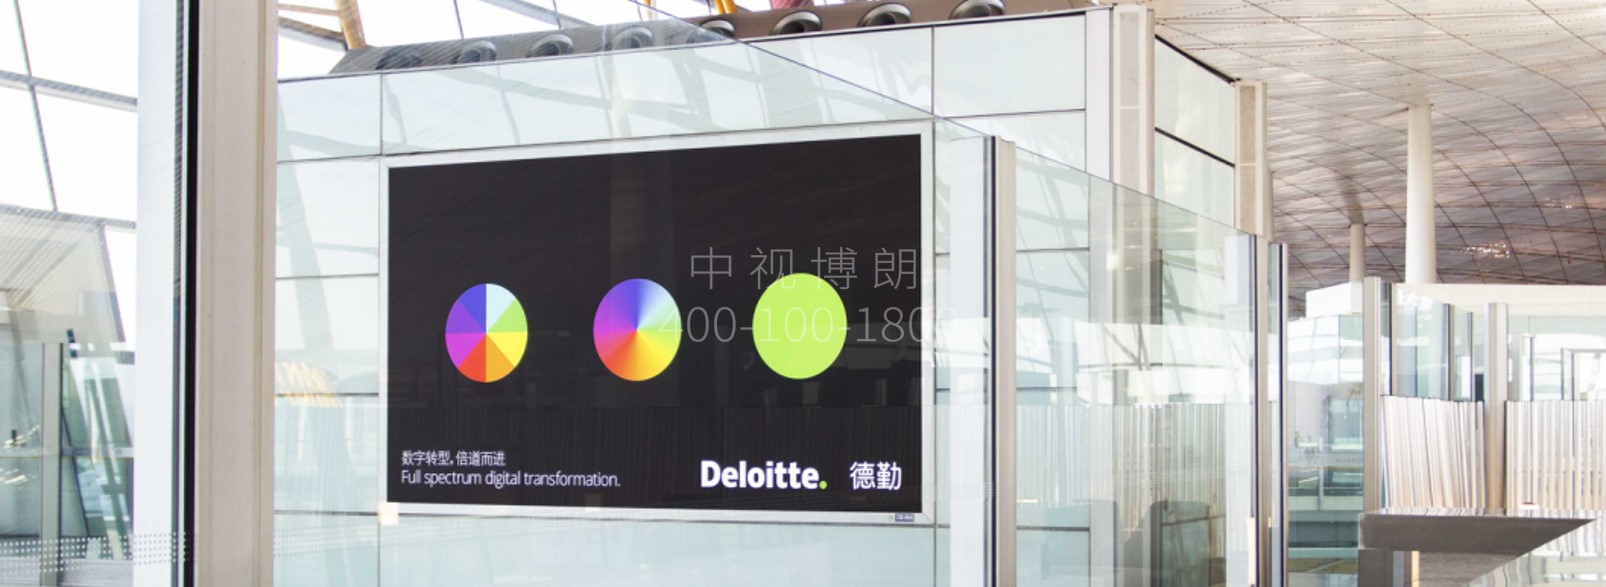 北京首都机场广告-T3国际出发通道灯箱套装